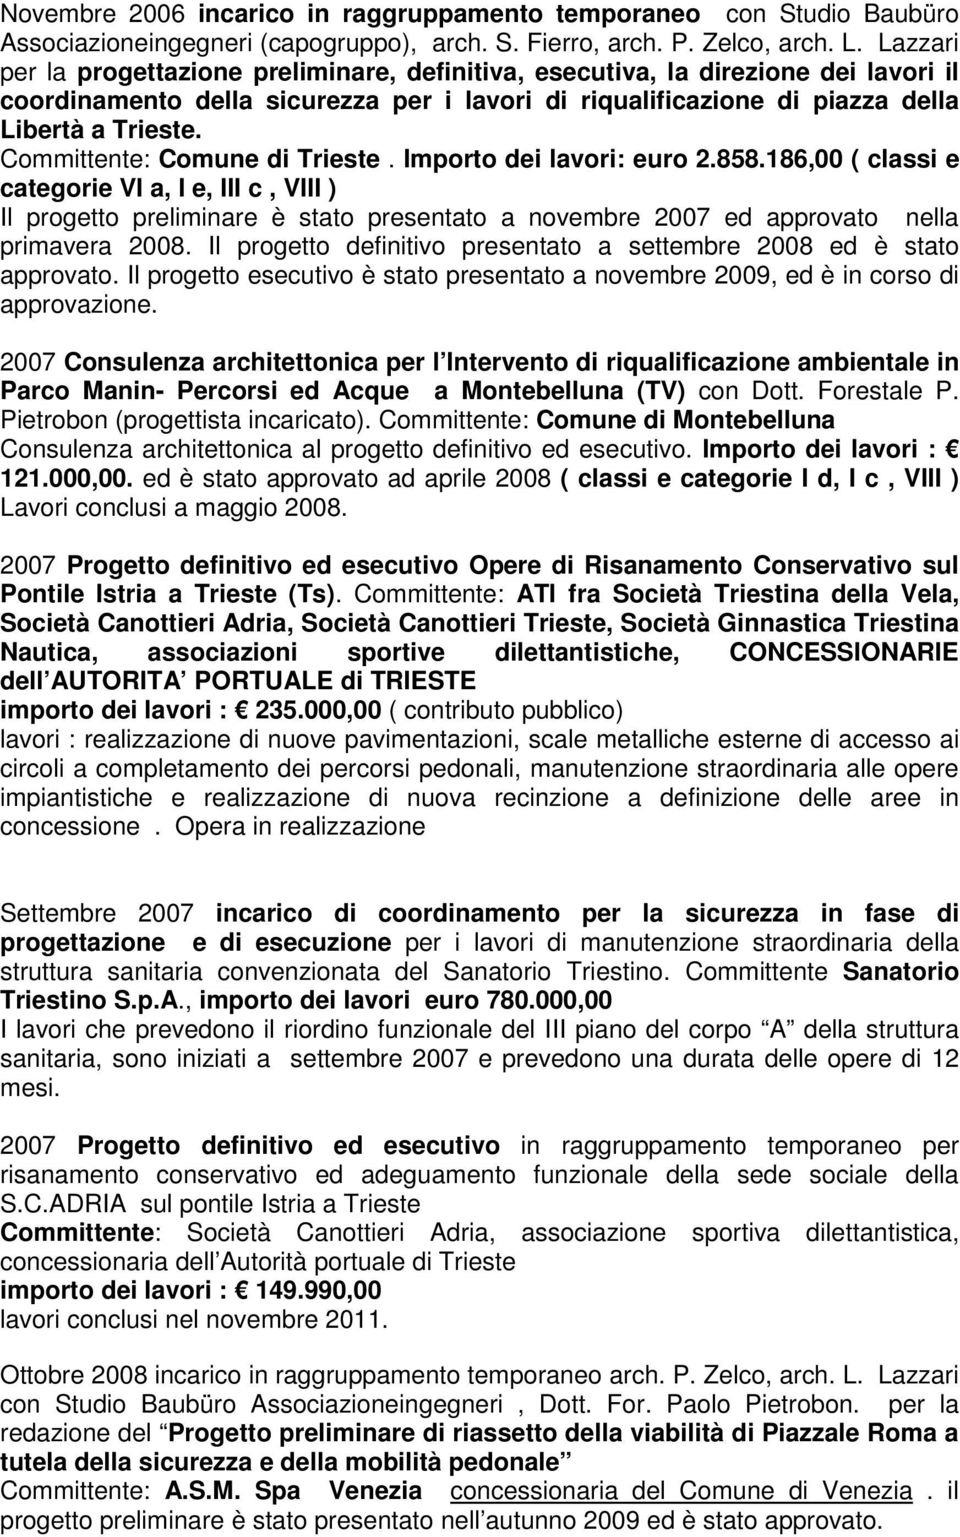 Committente: Comune di Trieste. Importo dei lavori: euro 2.858.